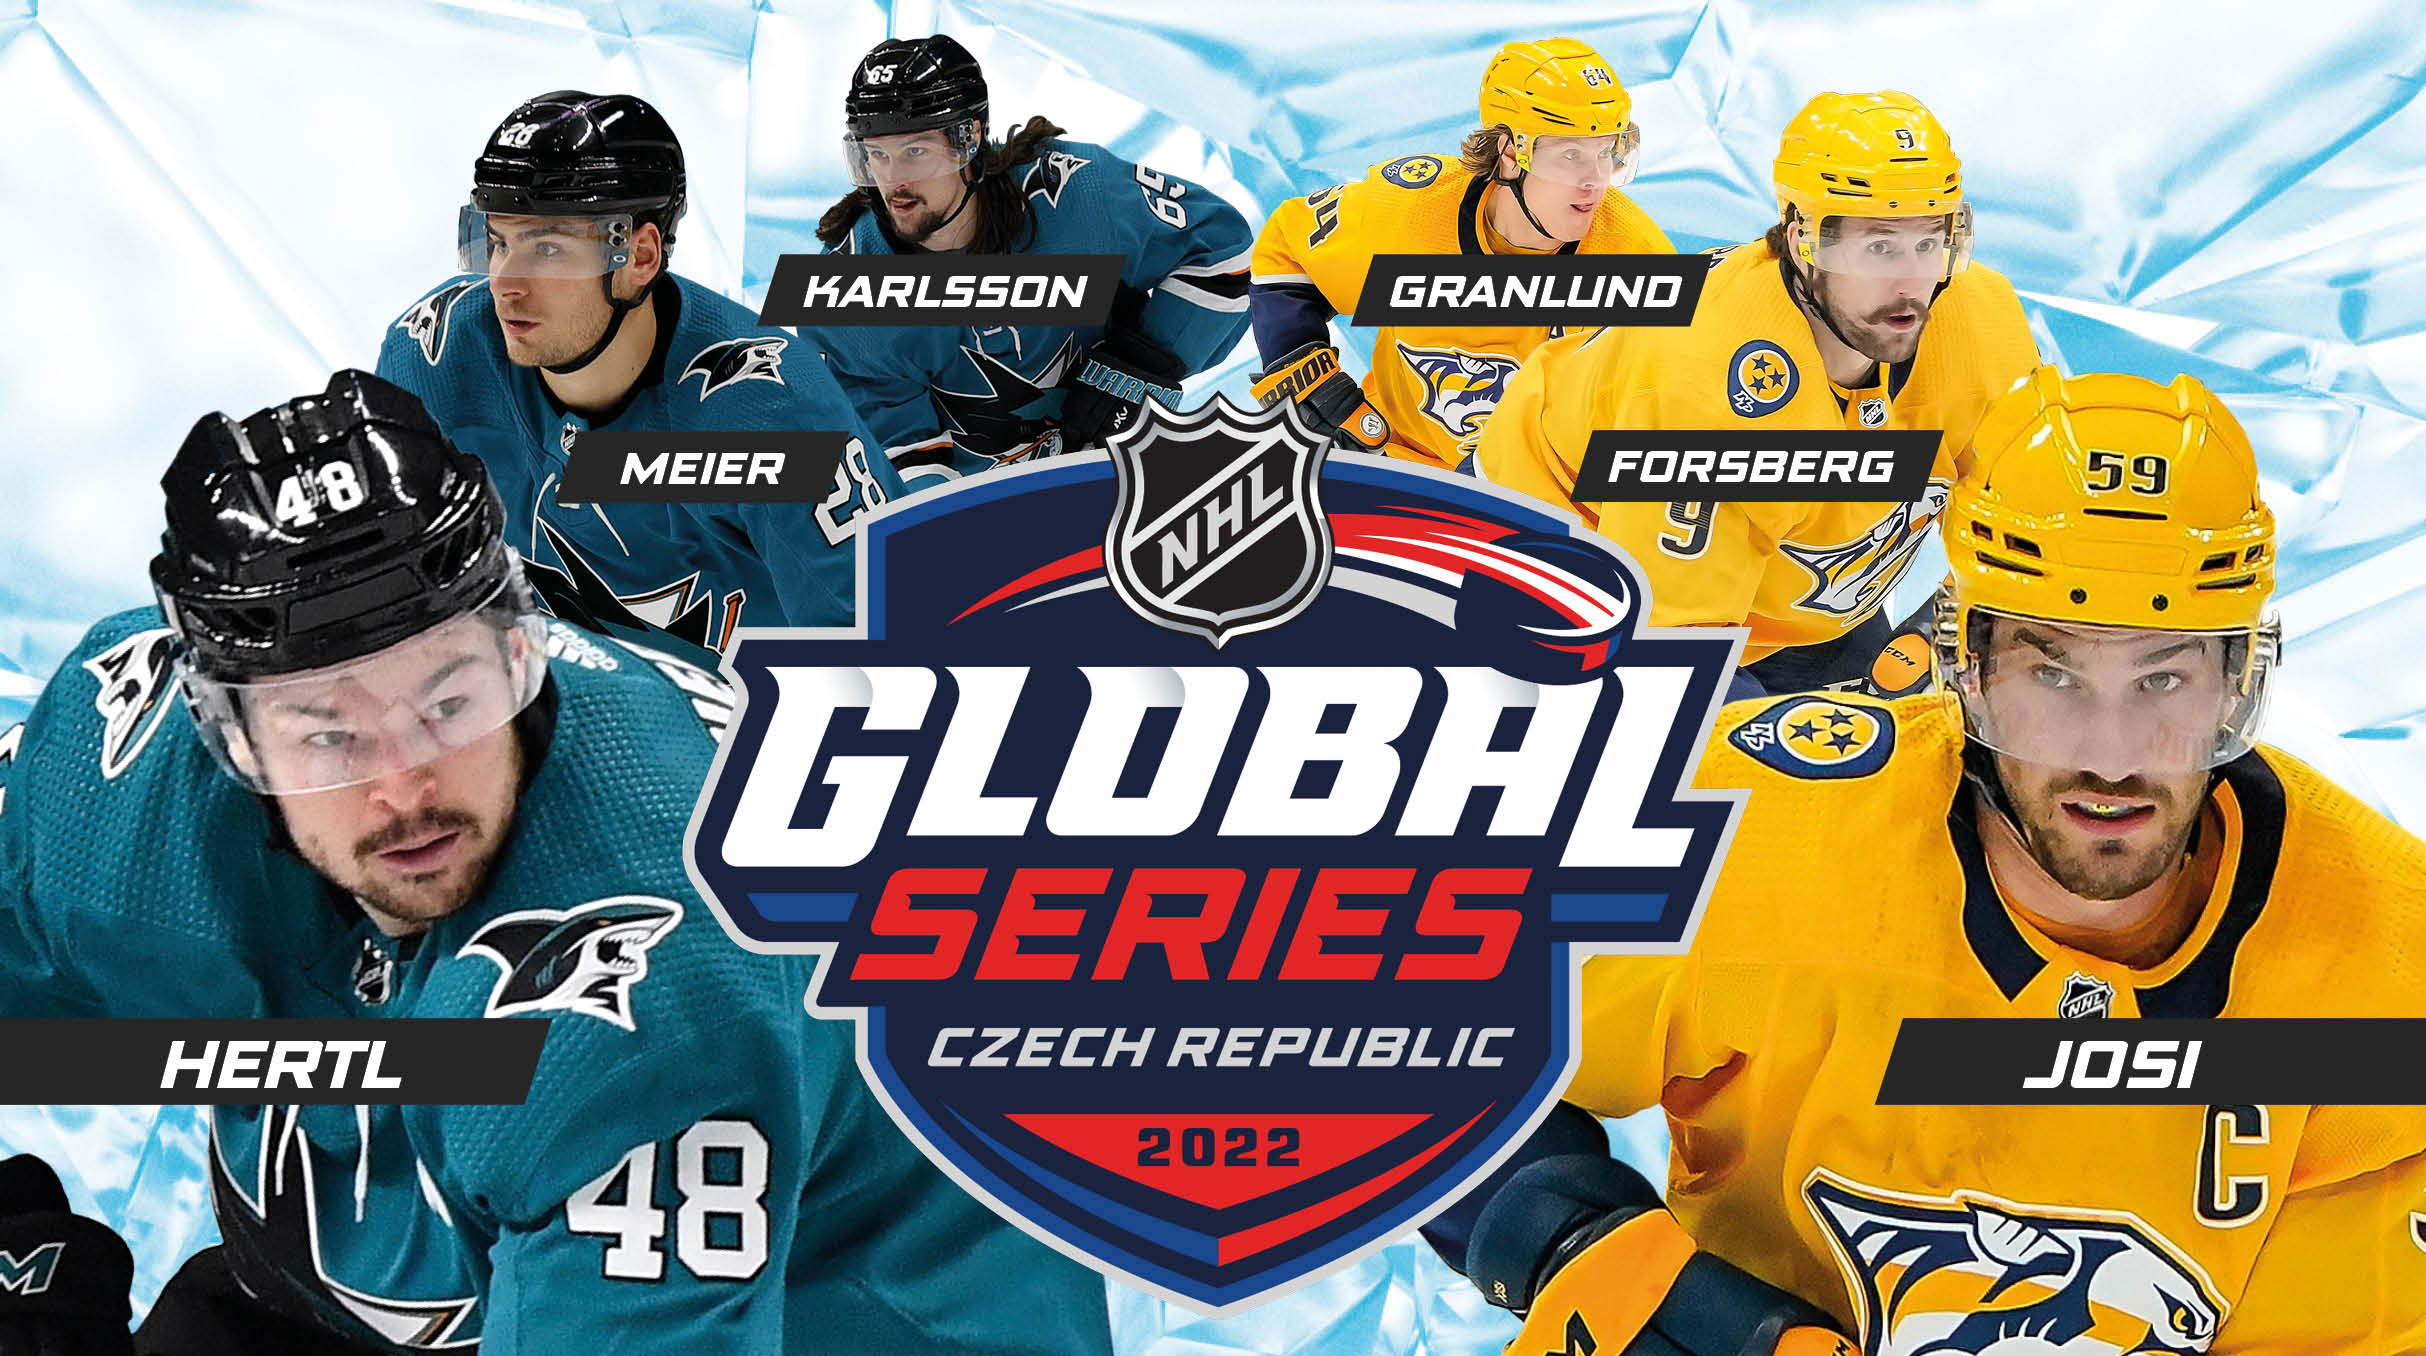 NHL v Praze 2022- NHL GLOBAL SERIES | VIP Balíčky- Praha O2 arena -O2 arena Praha 9 Českomoravská 2345/17a, Praha 9 19000